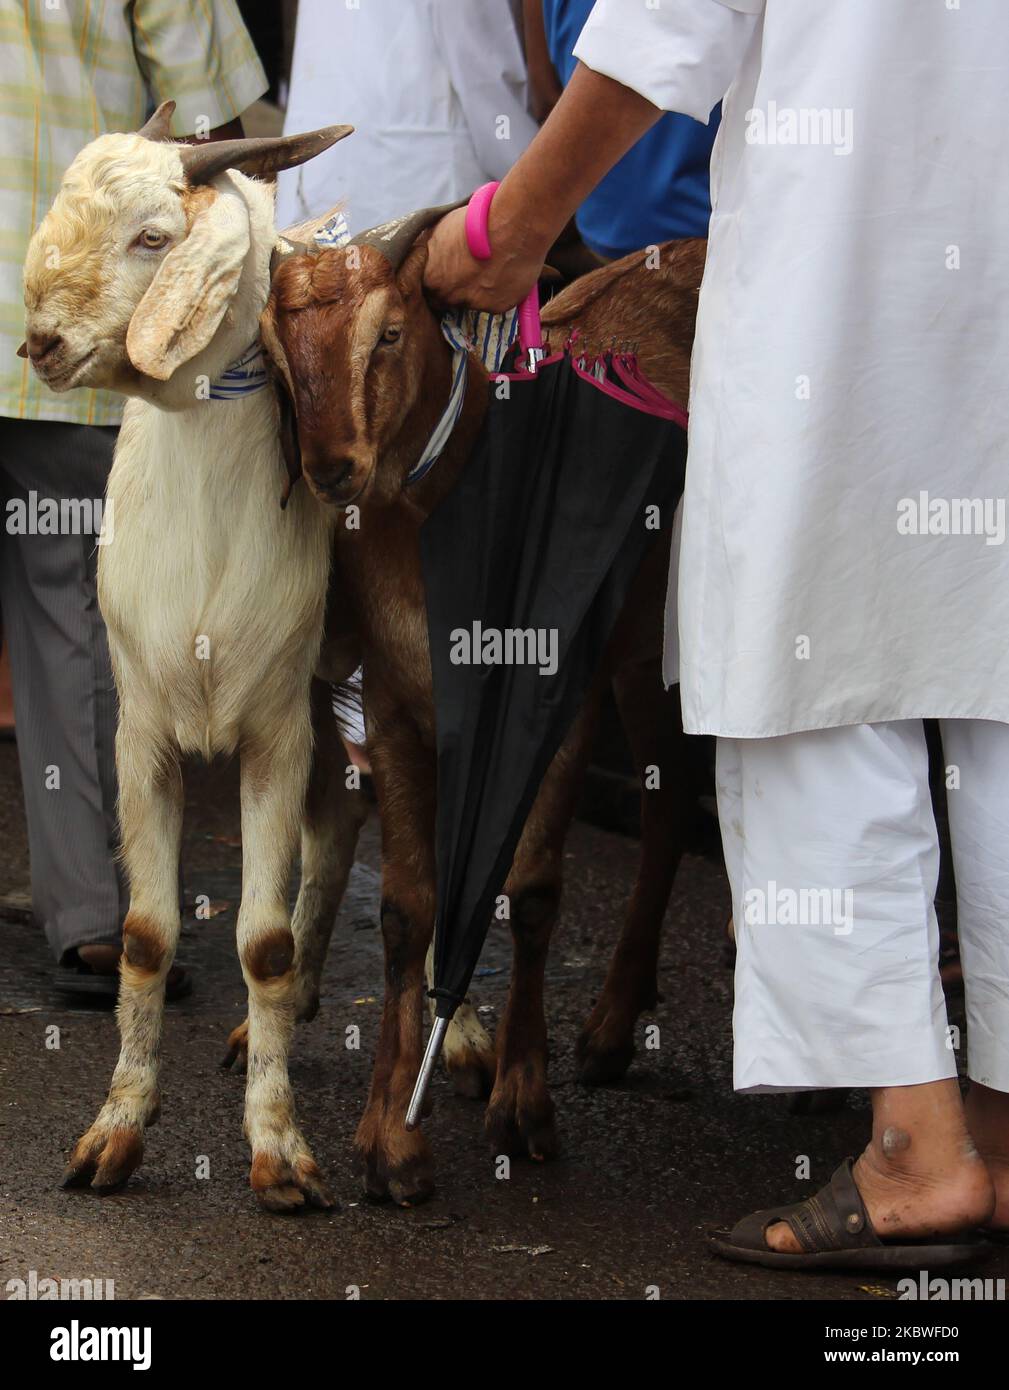 Vor dem Eid al-Adha-Fest in Mumbai, Indien, am 30. Juli 2020 kaufen die Menschen Ziegen vom lokalen Viehmarkt. Eid Al-Adha oder das Fest des Opfers wird jedes Jahr von Muslimen gefeiert, indem Ziegen oder Kühe geschlachtet werden, deren Fleisch später an die Armen verteilt wird. (Foto von Himanshu Bhatt/NurPhoto) Stockfoto